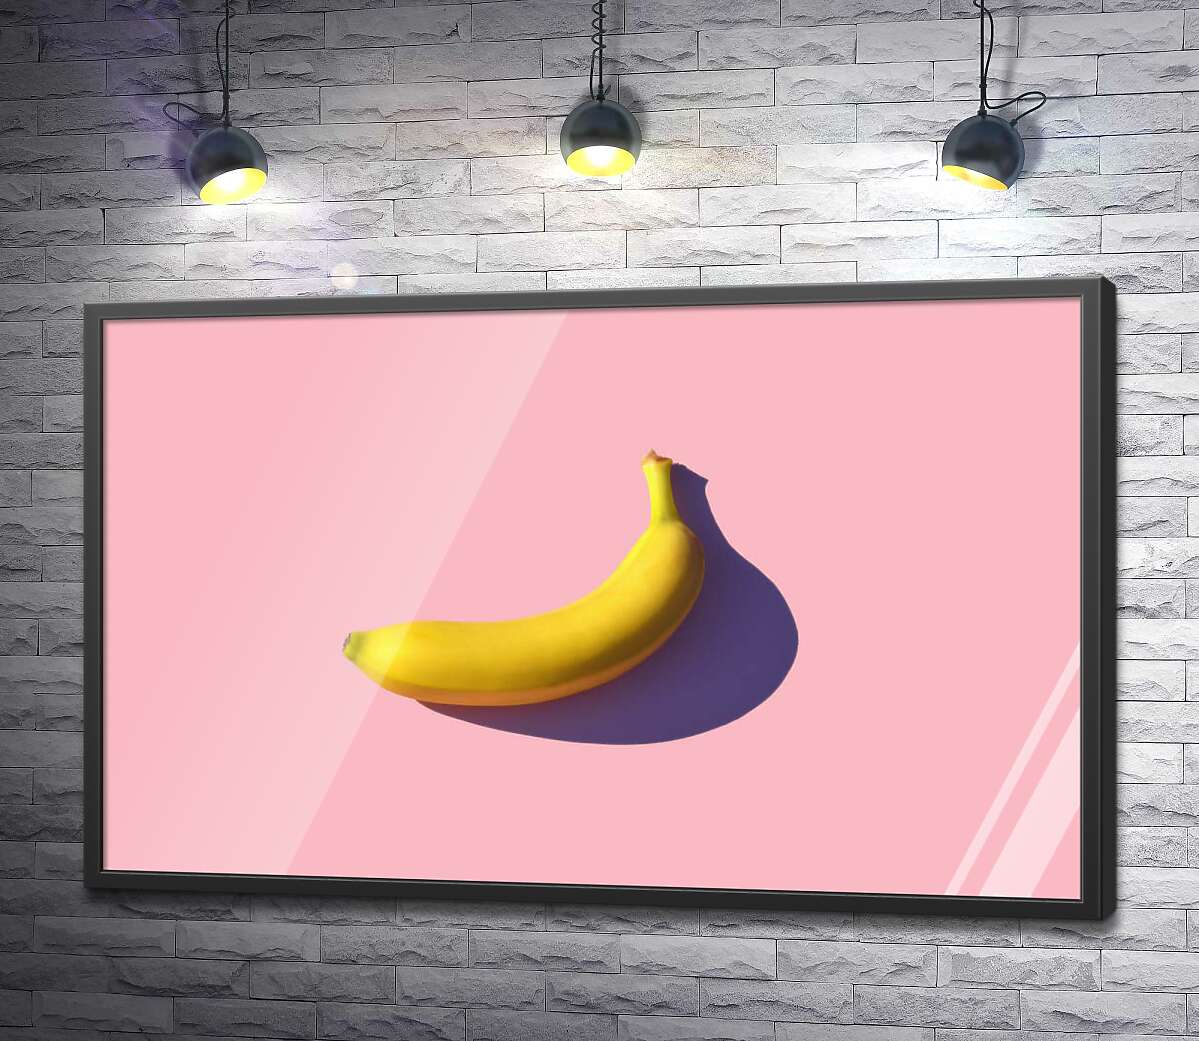 постер Солнечного цвета банан бросает фиолетовую тень на розовый фон